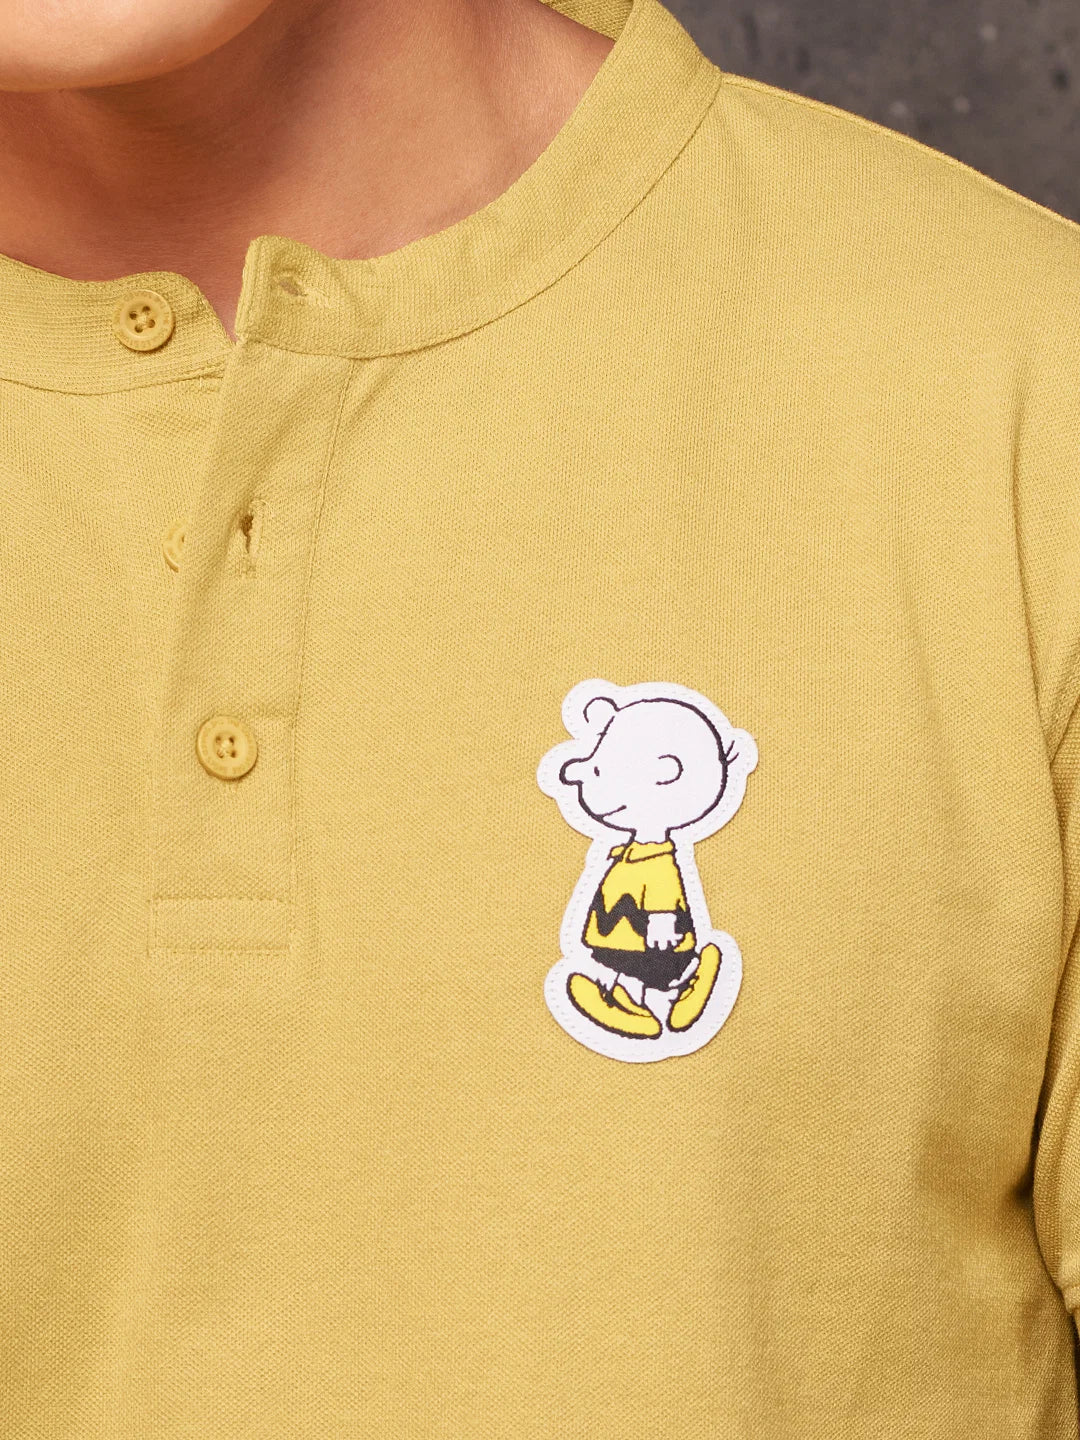 Peanuts Charlie Brown (UK version)